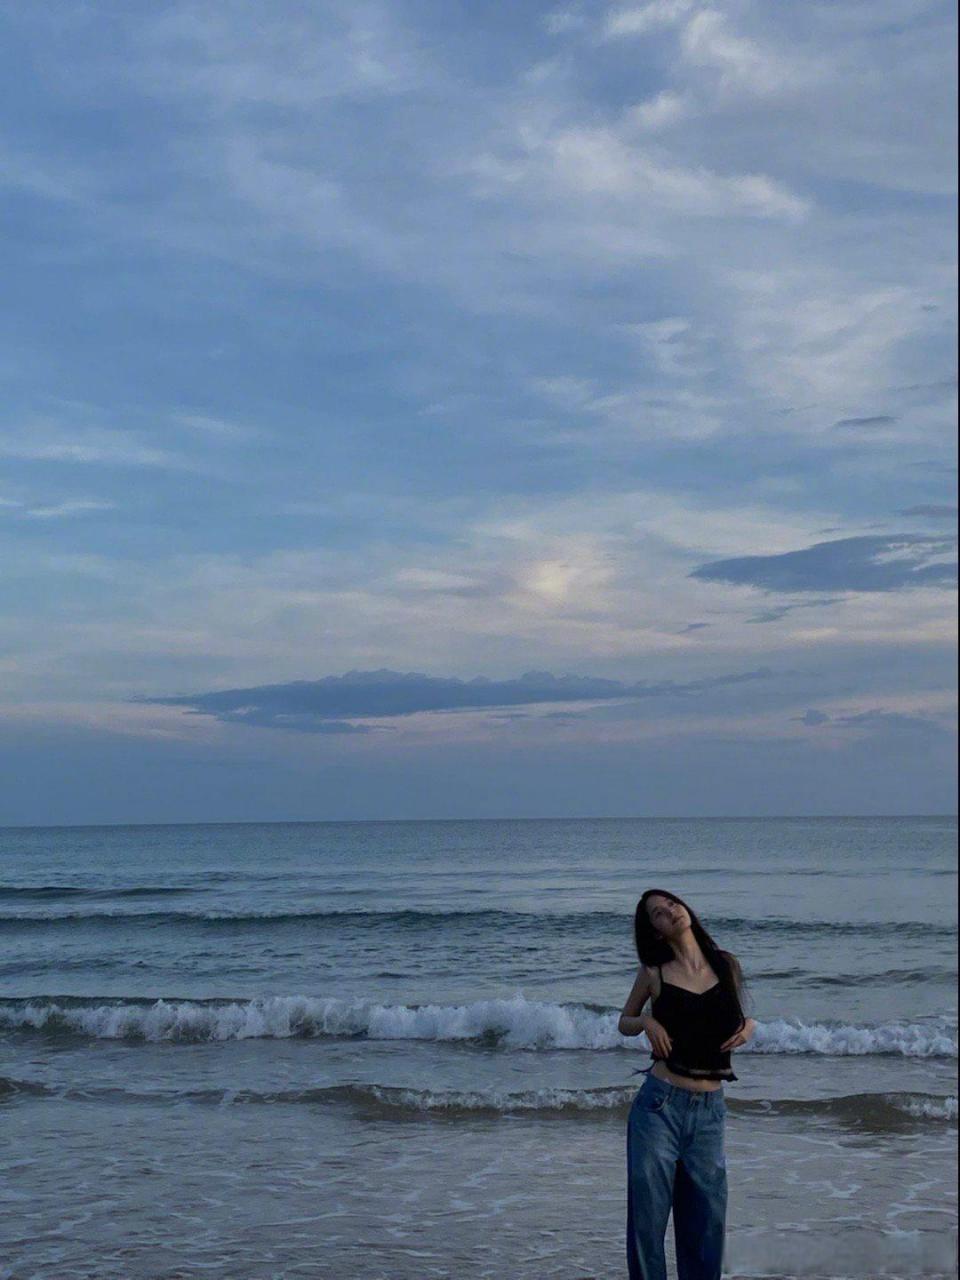 欧阳娜娜在海边的照片图片